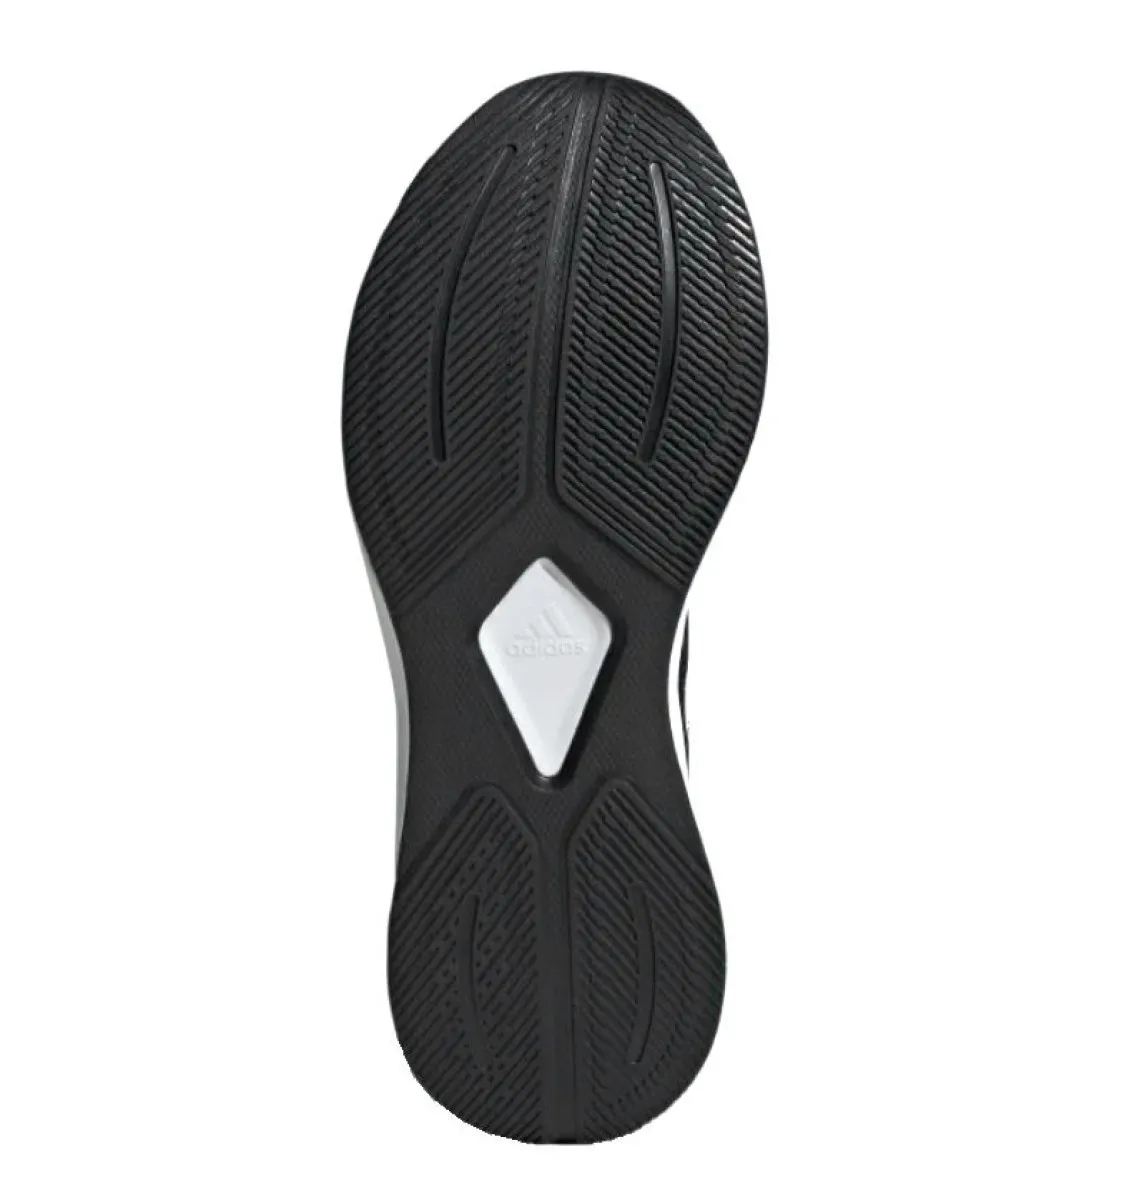 Zapatillas deportivas adidas Duramo SL 10 negro/blanco, mujer